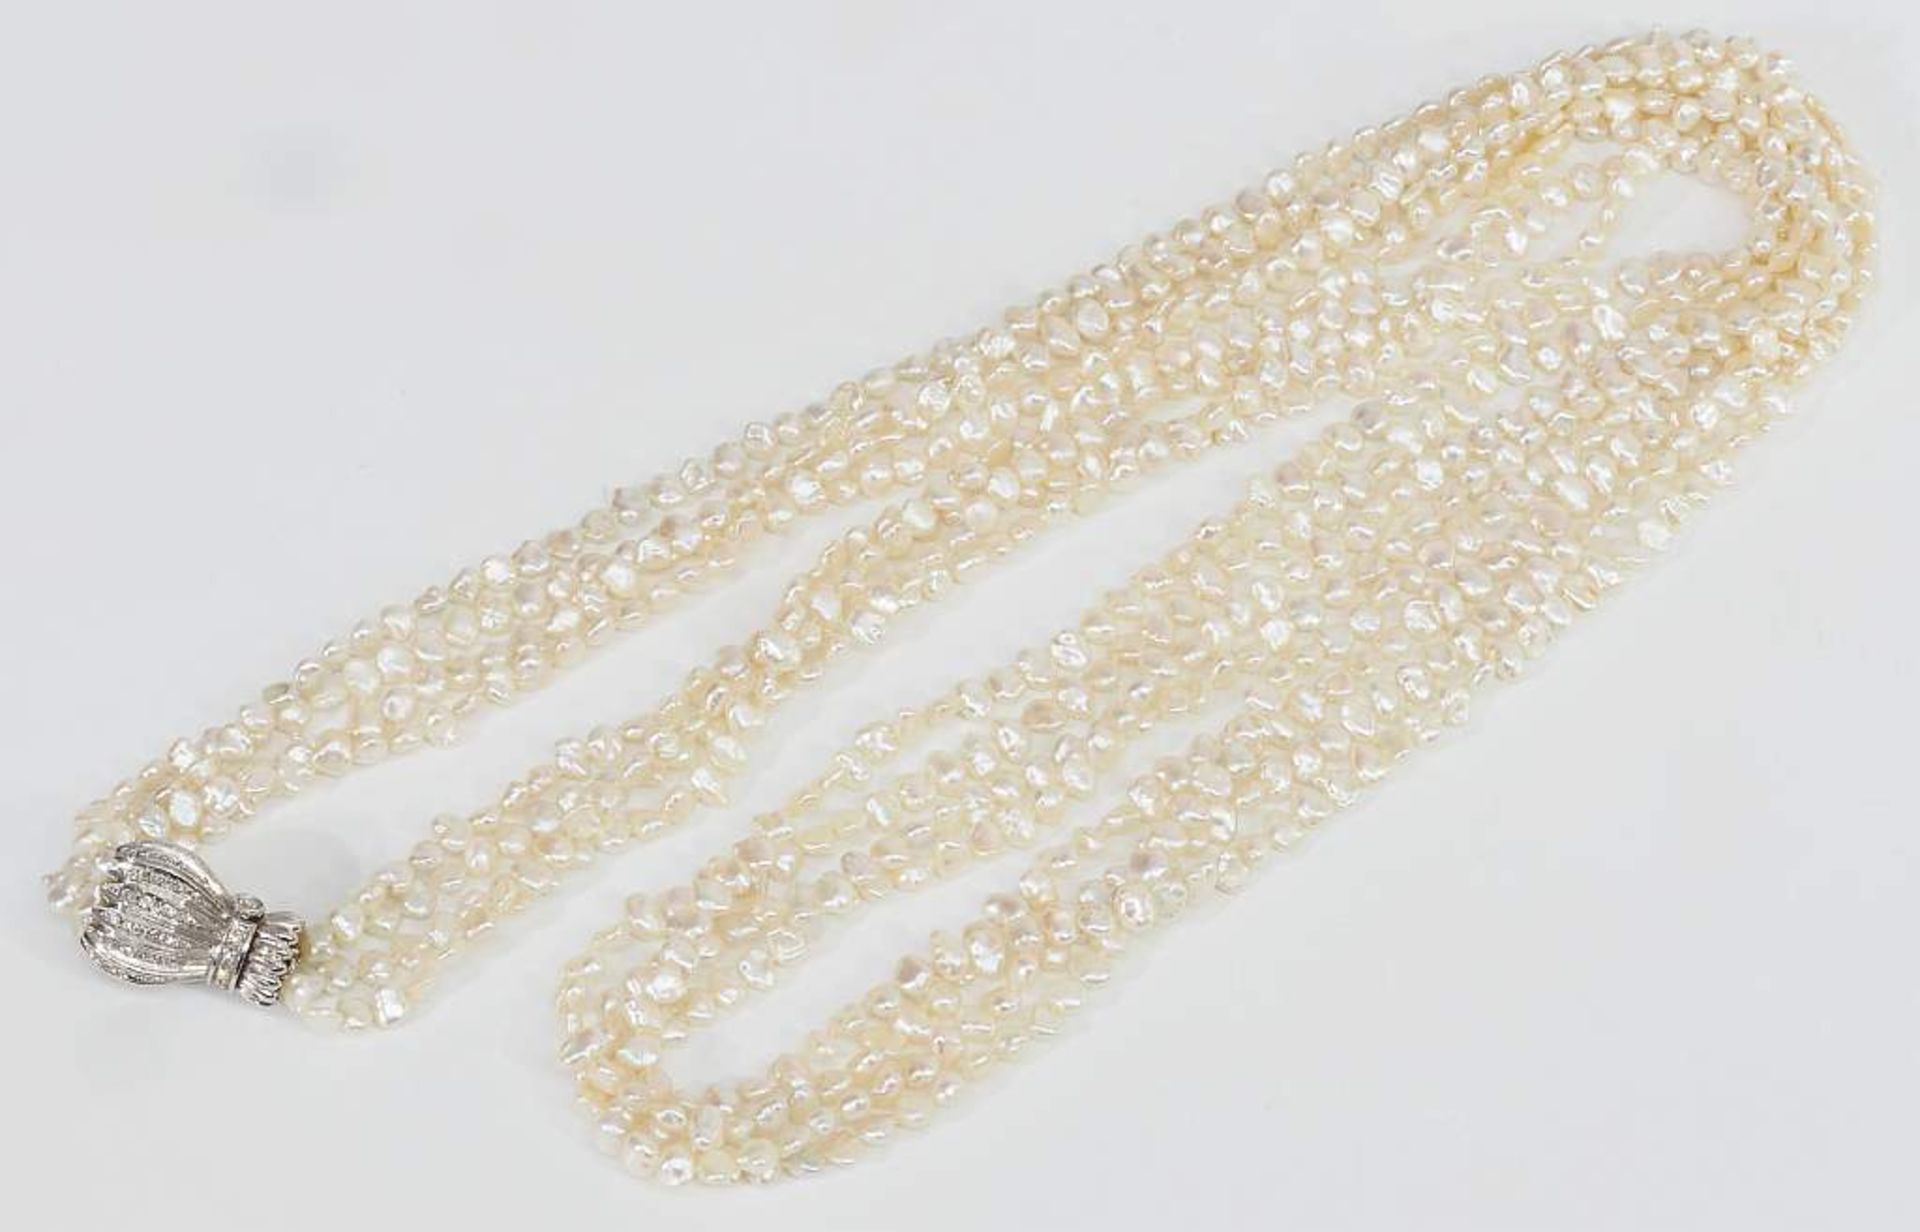 Keshi /Süsswasser-Perlenkette in weiß mit vier Strängen. Keshi /Süsswasser-Perlenkette in weiß mit - Bild 6 aus 7